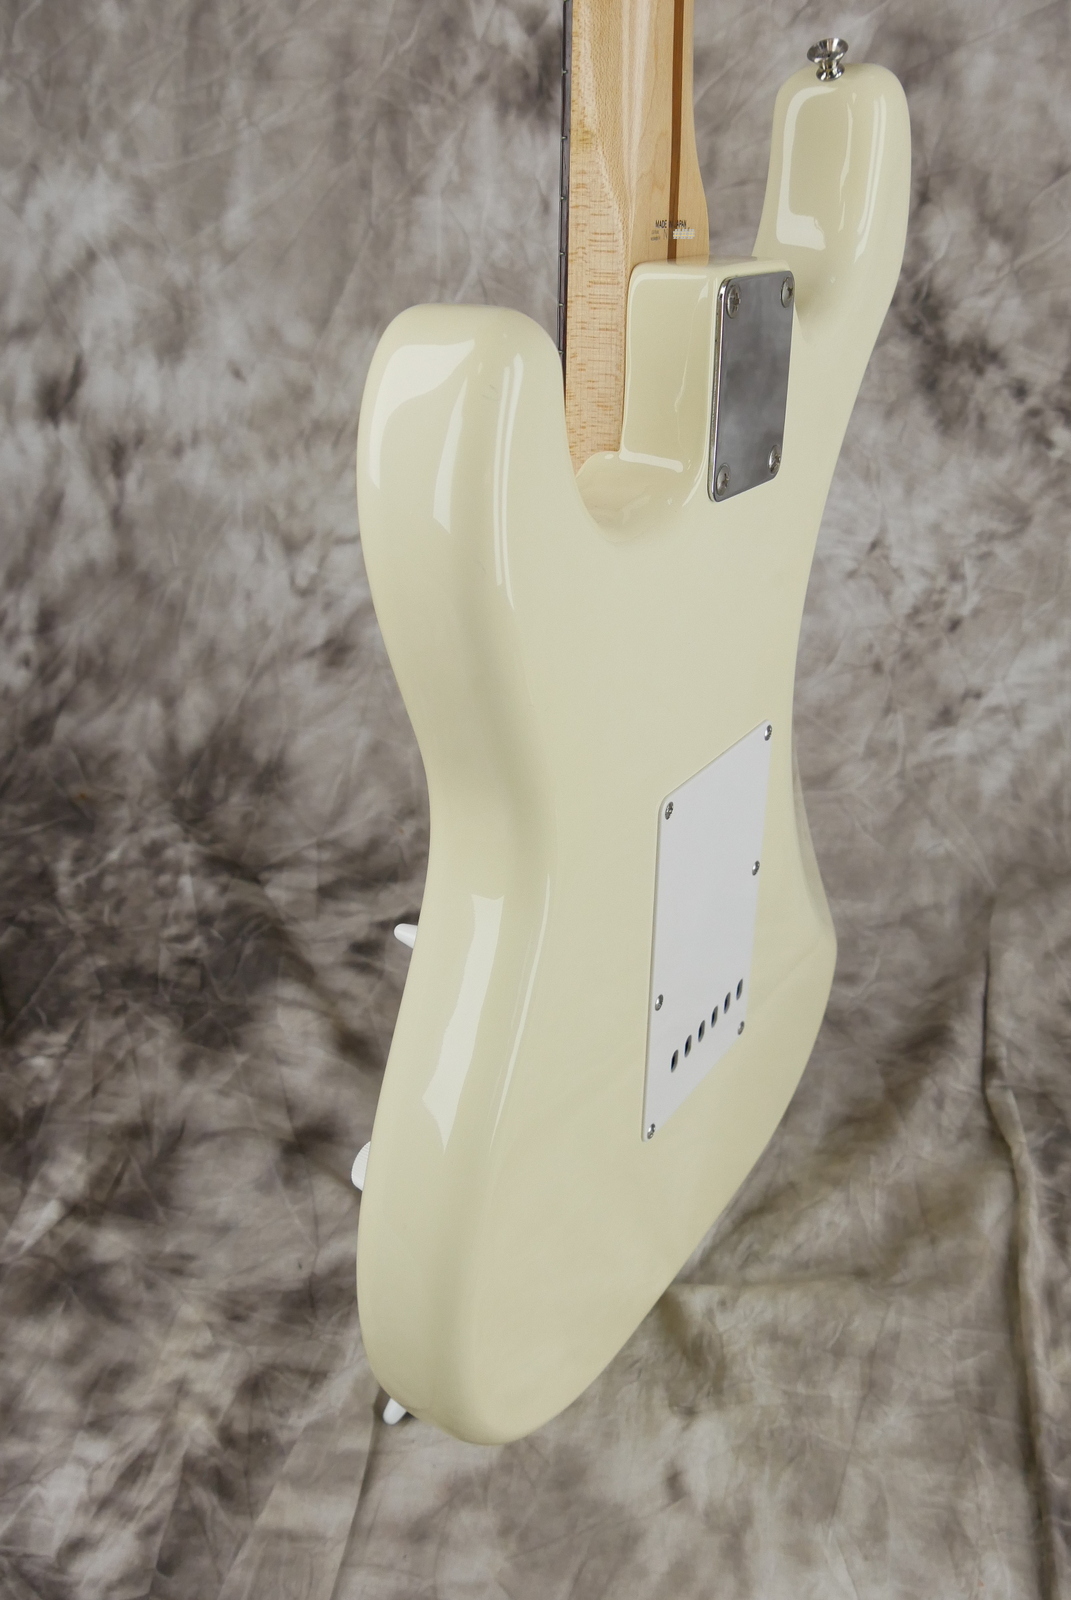 Fender_Stratocaster_Squier_series_Japan_olympic_white_1993-007.JPG